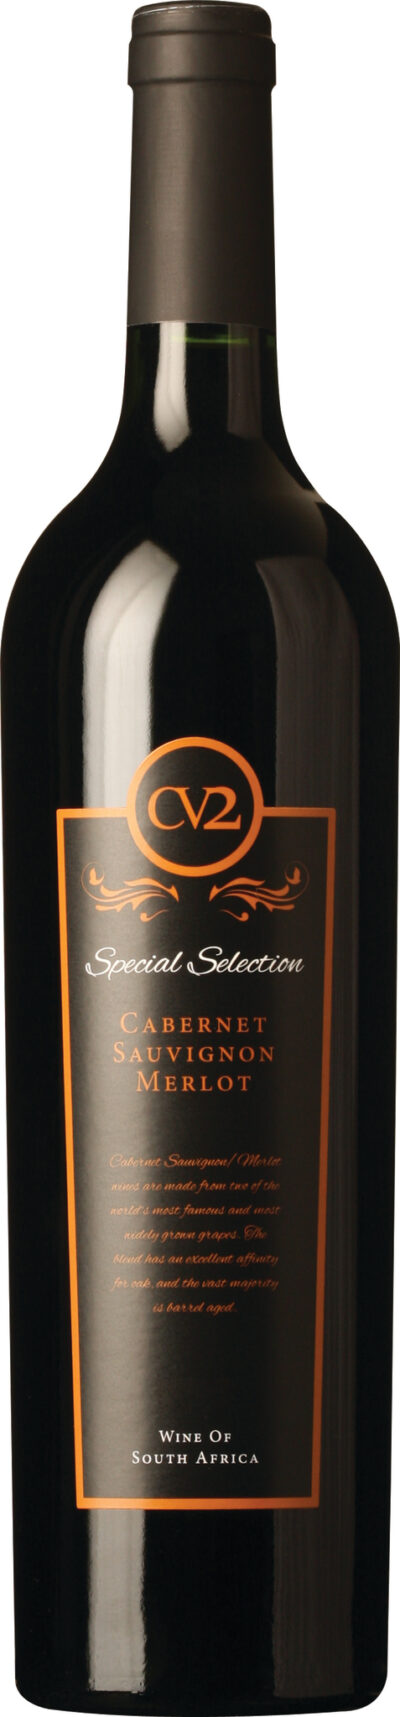 CV2 Special Selection Cabernet Sauvignon / Merlot